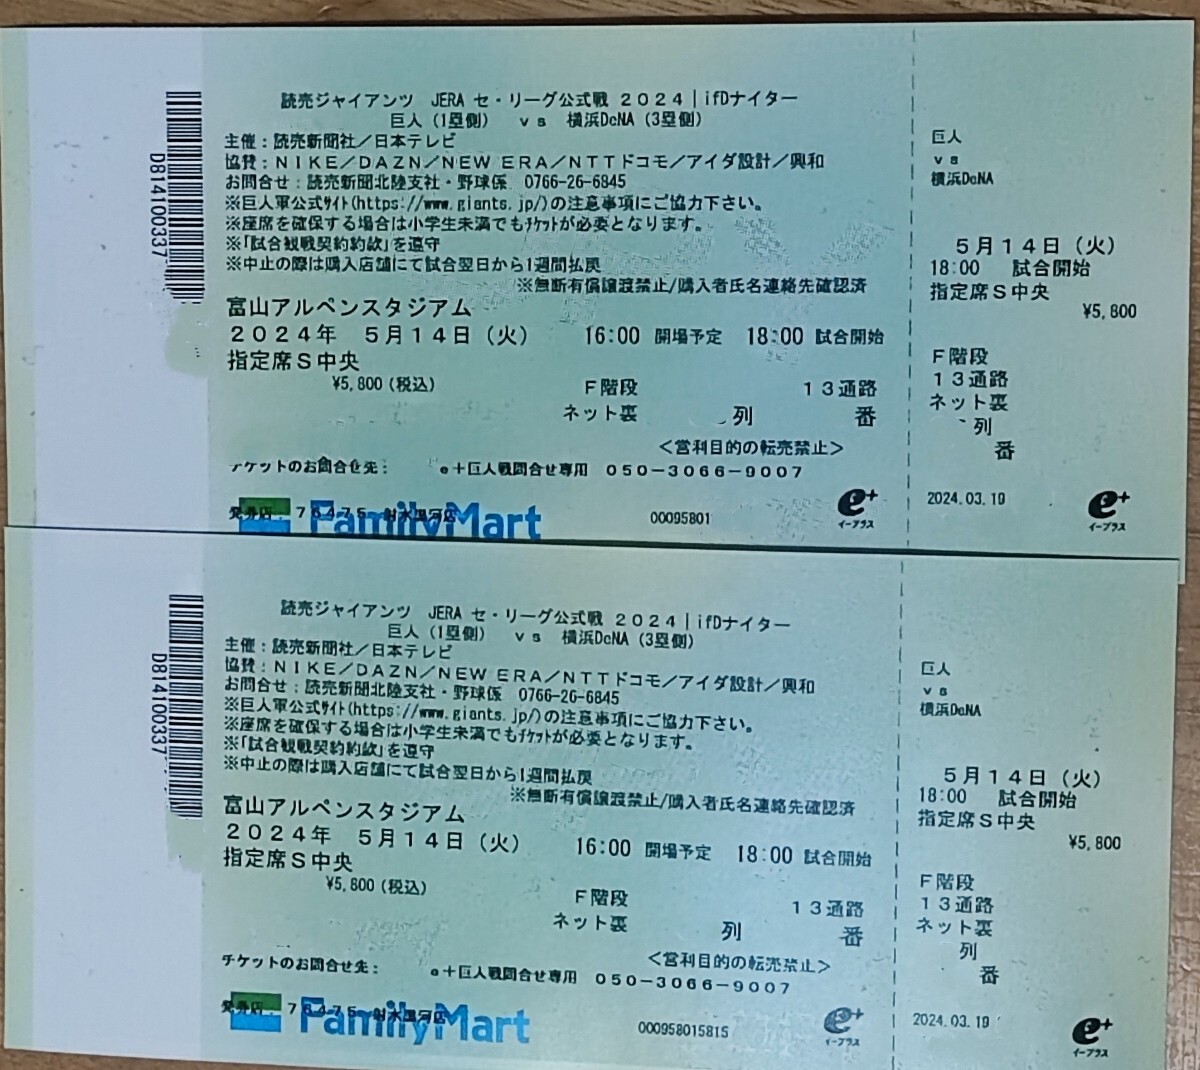  Toyama Alpen Stadium . человек vsDeNA 5/14 сеть обратная сторона указание сиденье S центр пара билет 